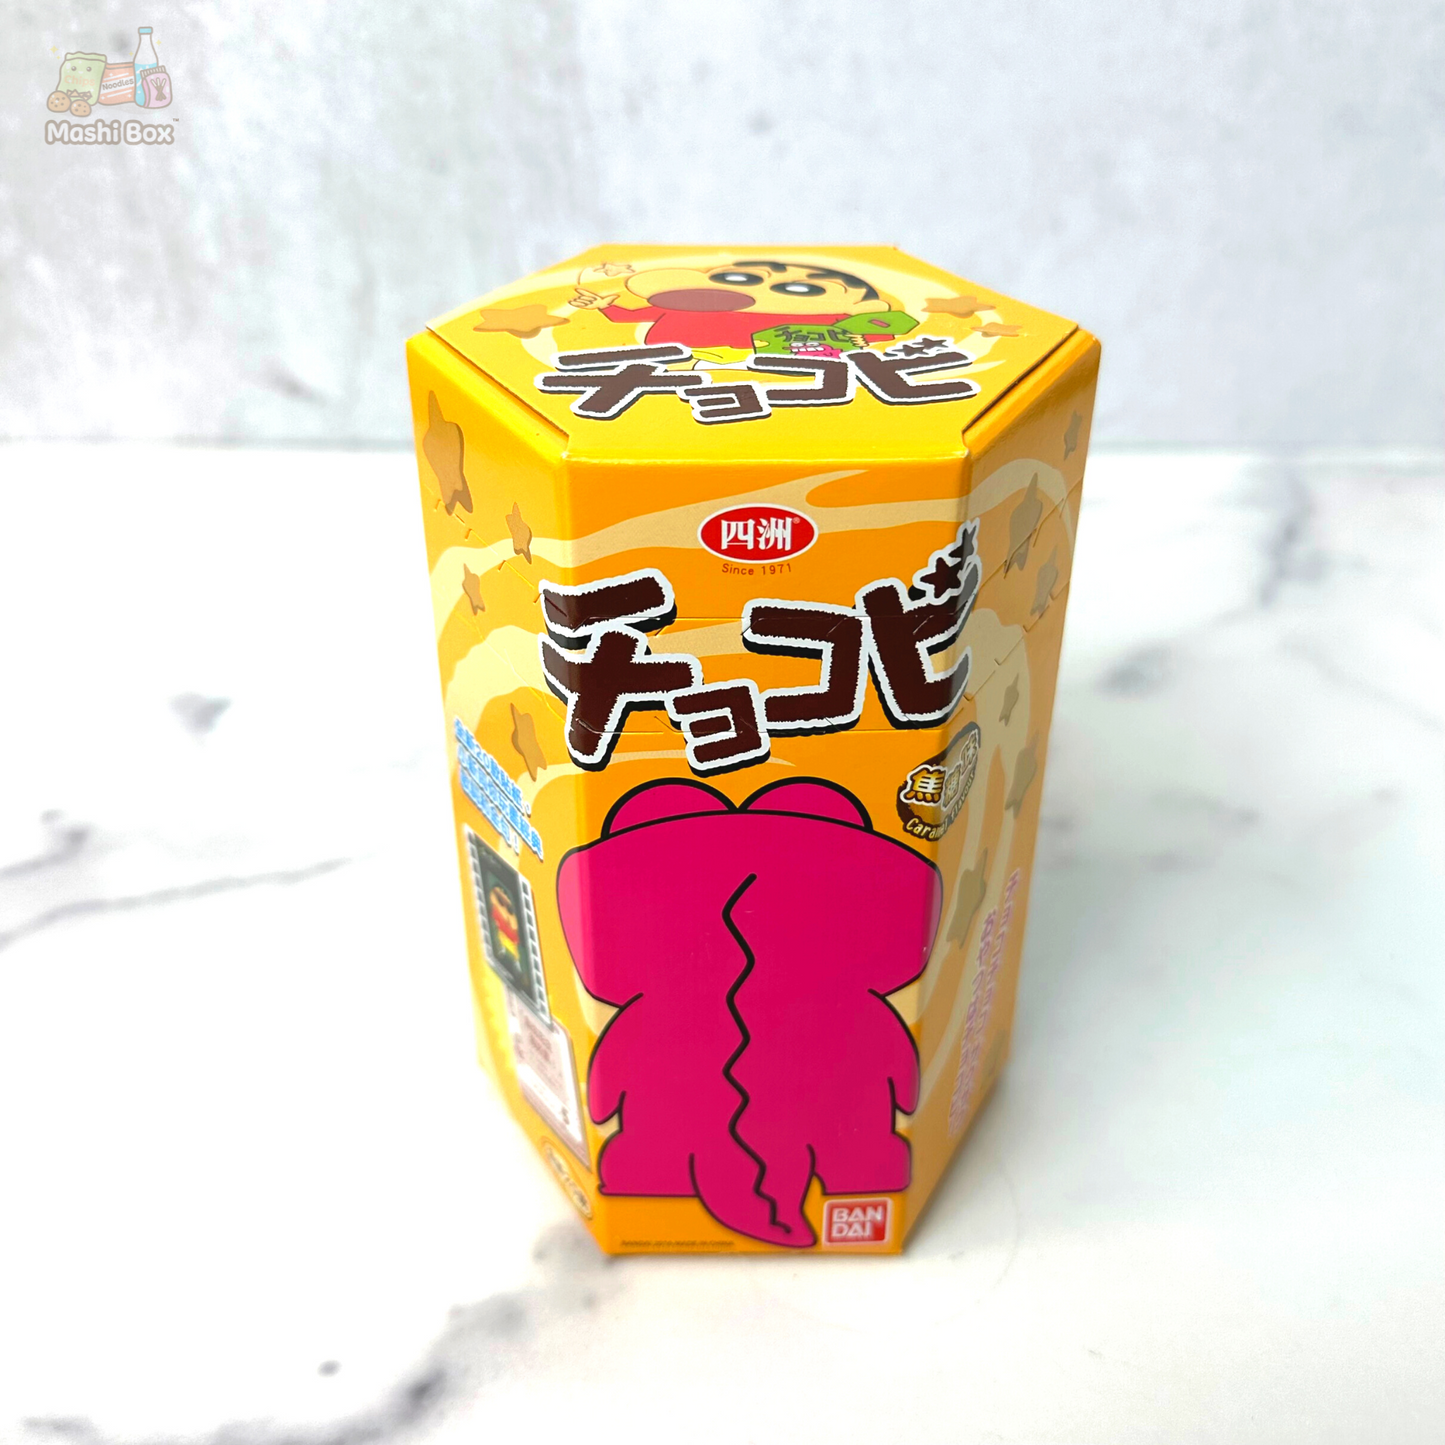 Crayon Shinchan Caramel Flavor Corn Snack